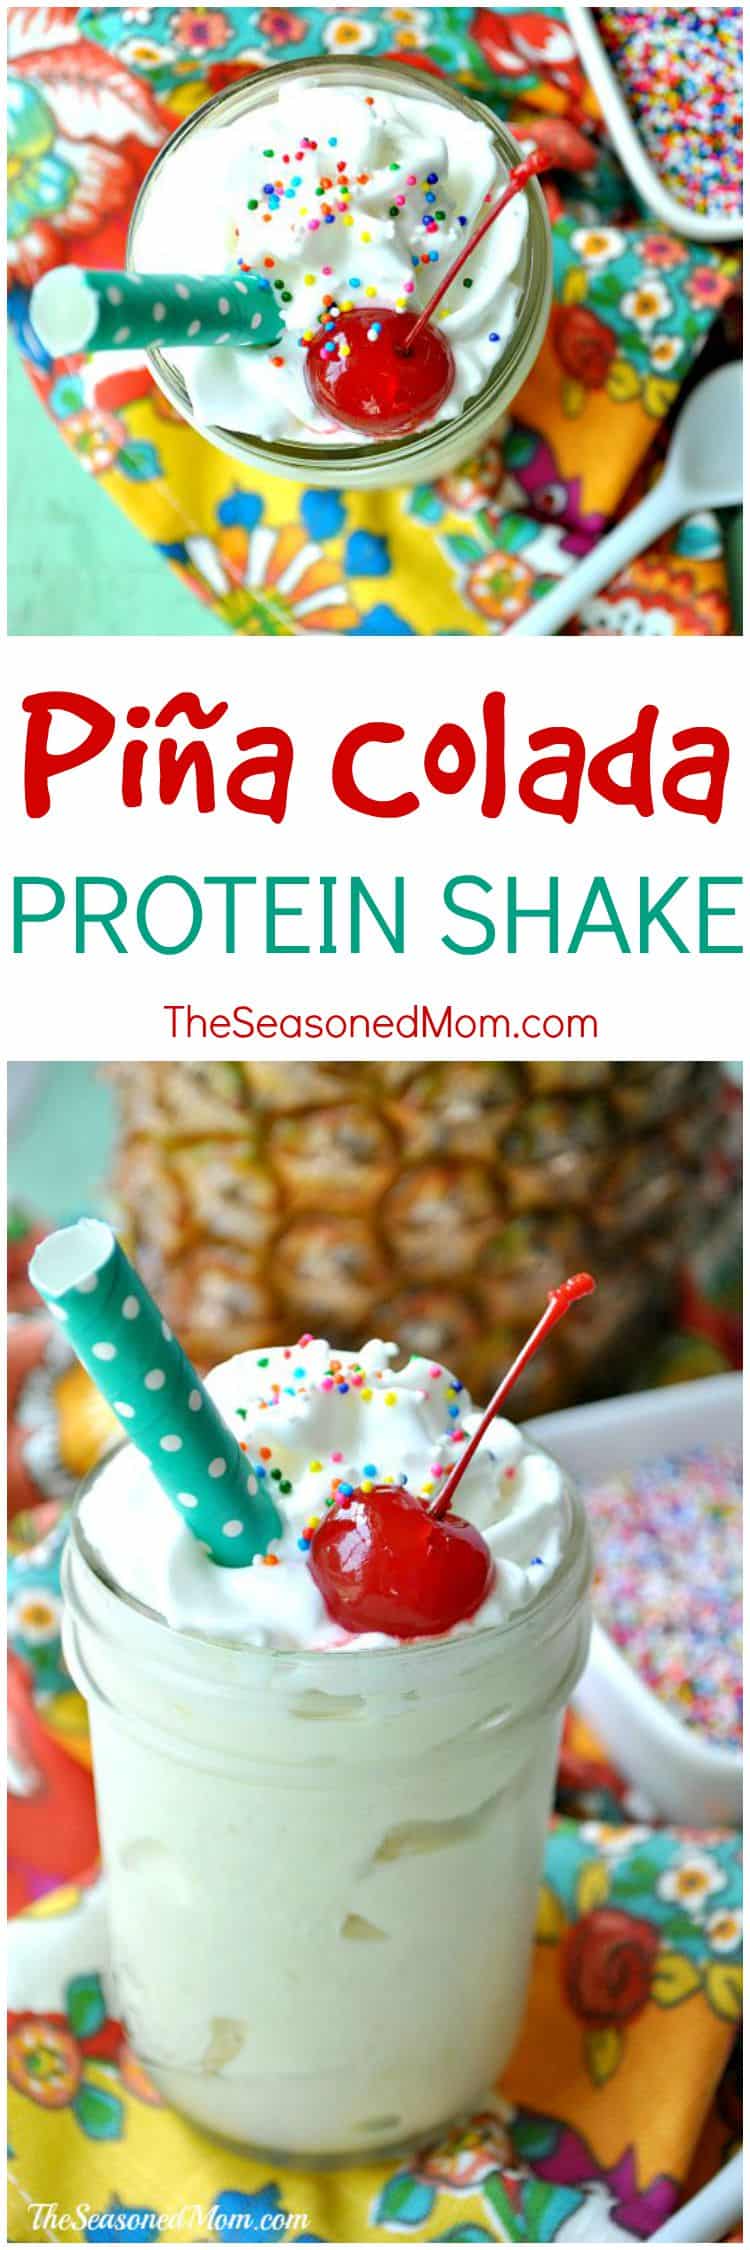 Piña Colada Protein Shake